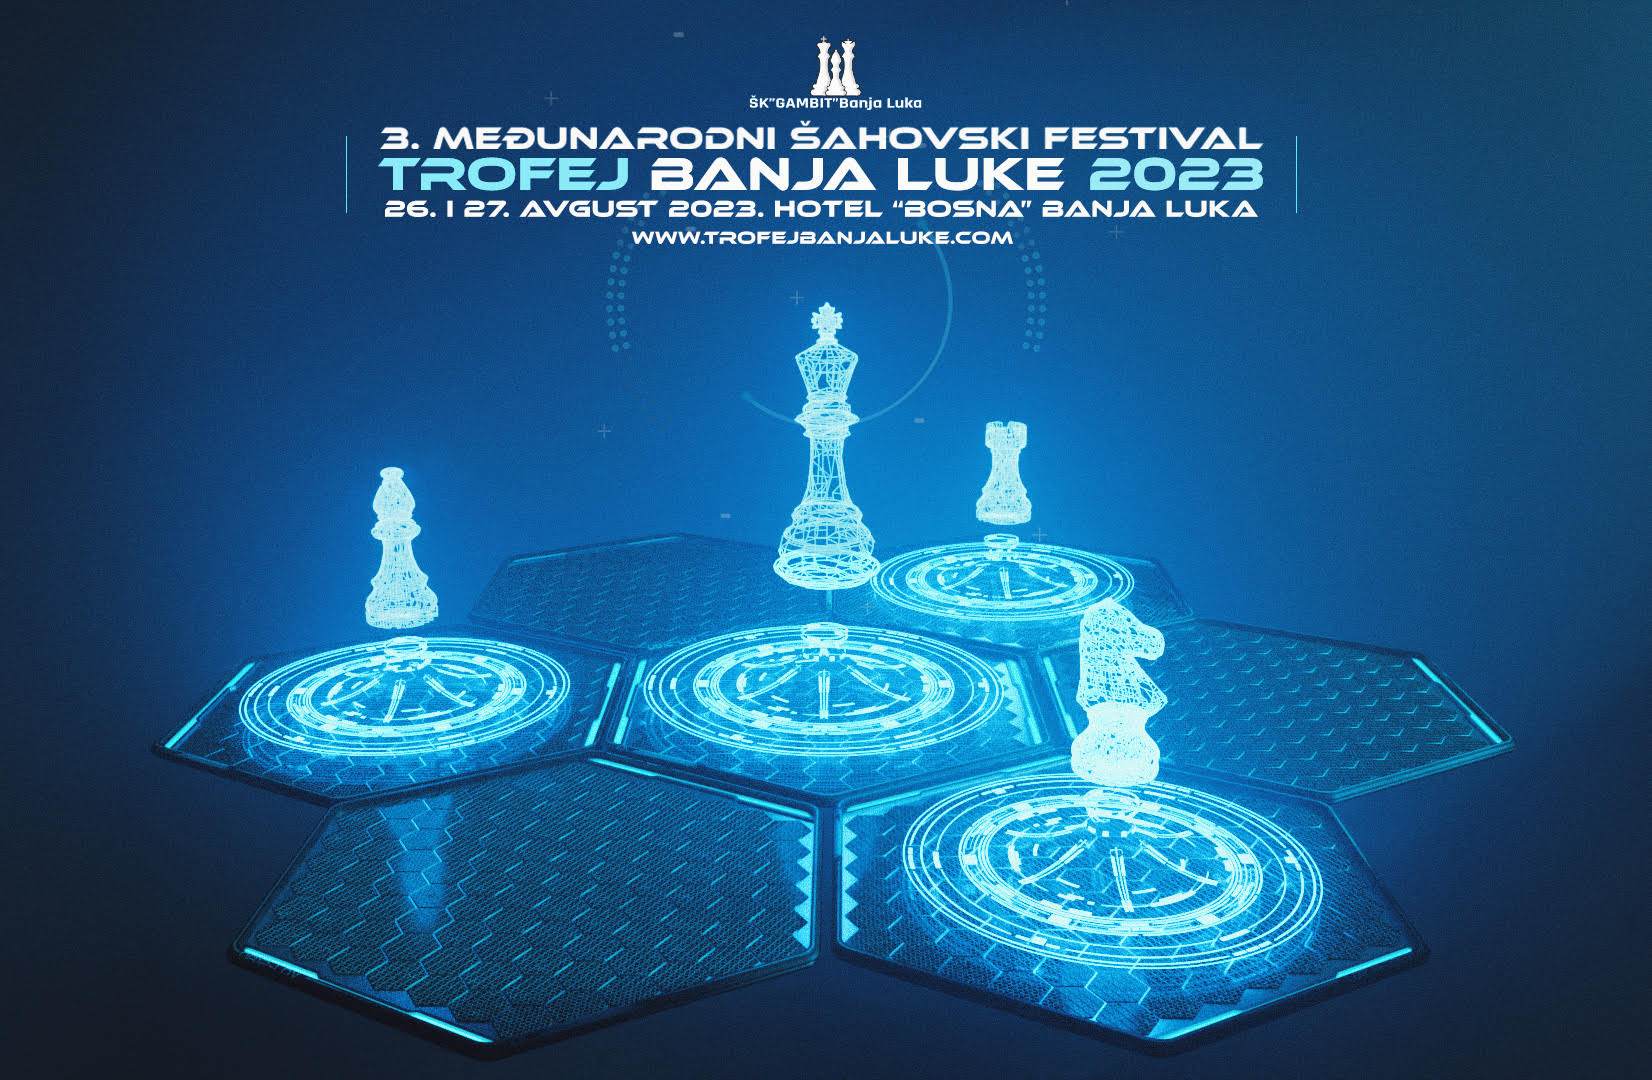 Raspis: 3. Međunarodni šahovski festival "Trofej Banjaluke 2023"